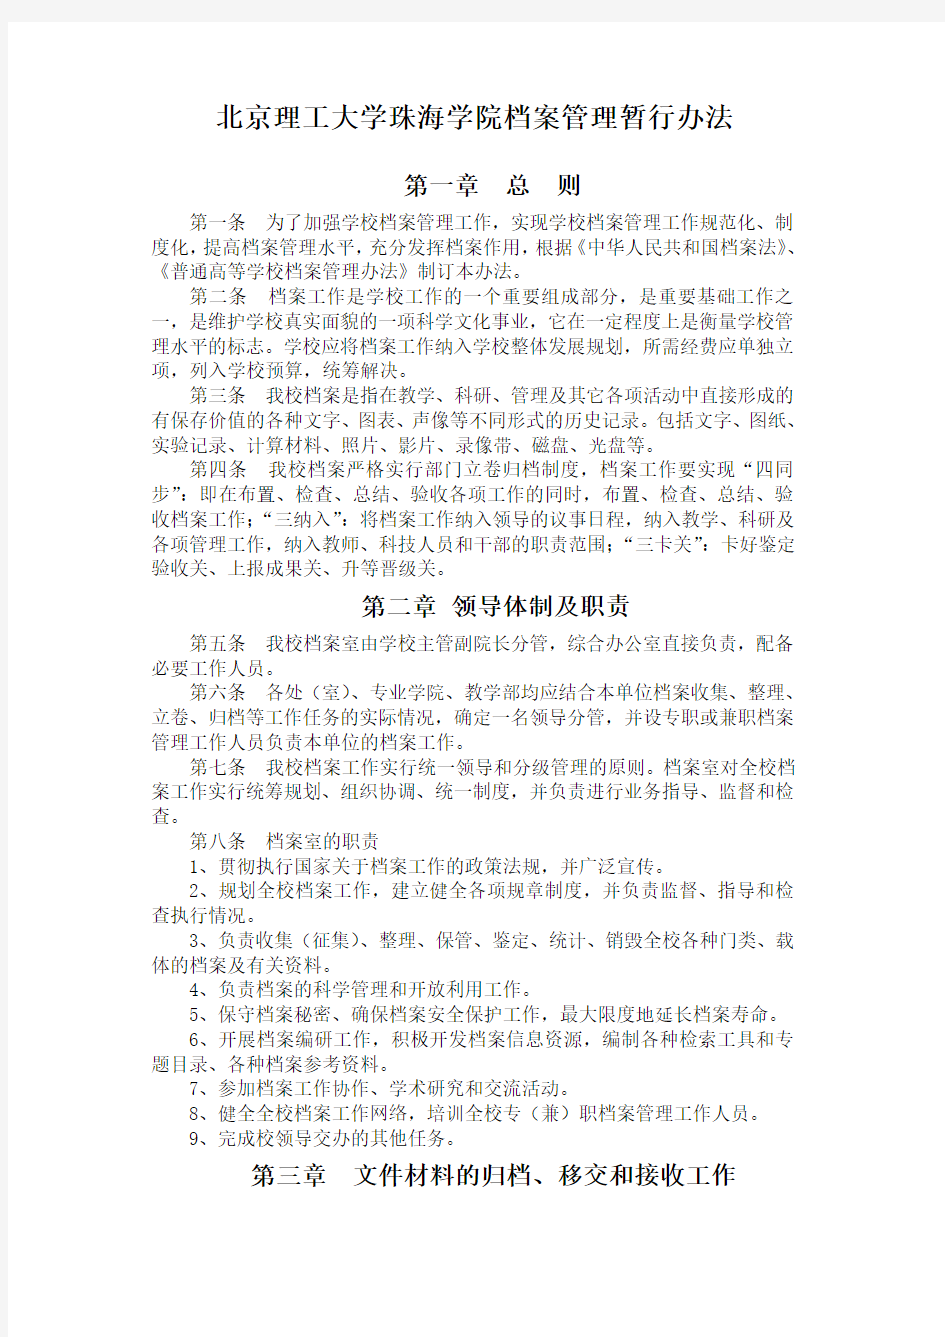 北京理工大学珠海学院档案管理暂行办法